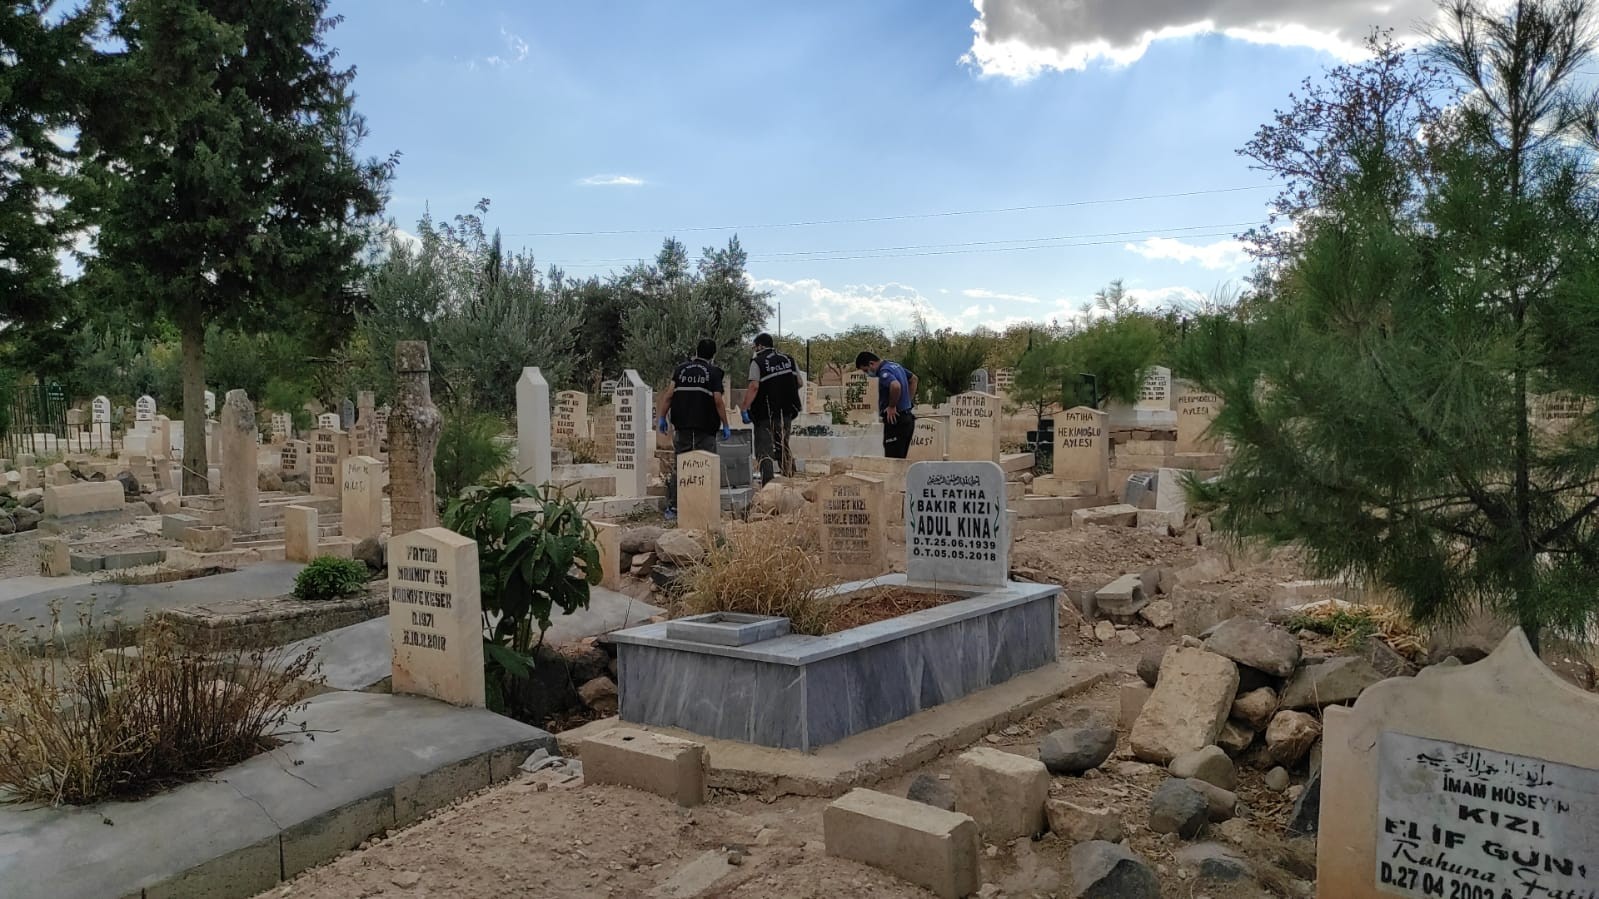 Şanlıurfa’da korkunç olay: Mezarlığa bırakılan çantada bebek cesedi çıktı #sanliurfa